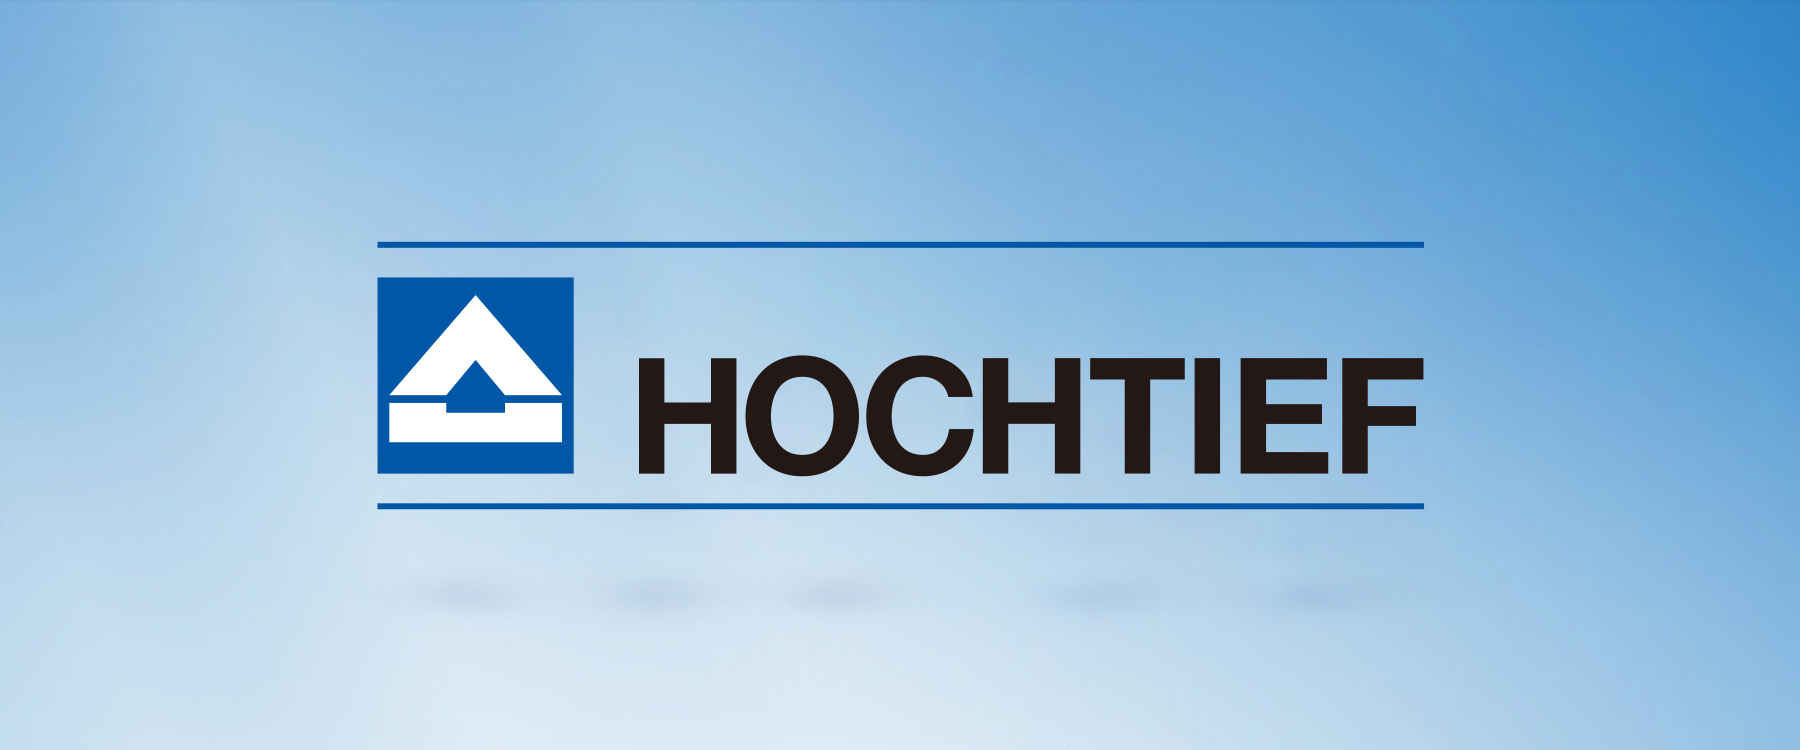 选择HOCHTIEF豪赫蒂夫生态地暖的理由